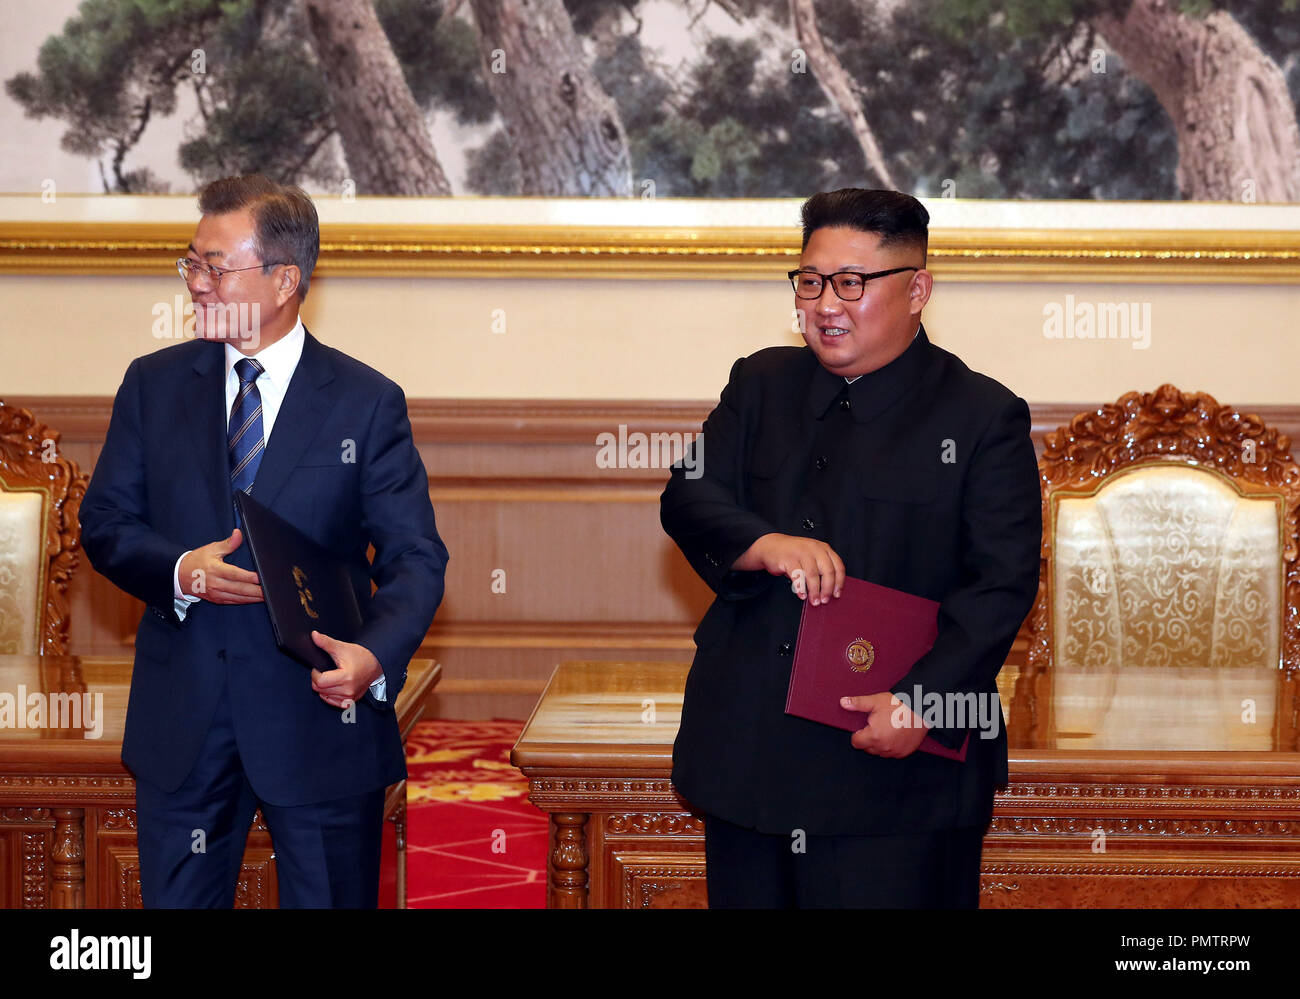 Pyeongyang, la Corée du Nord. 19 Sep, 2018. Le président sud-coréen MOON JAE-IN et le dirigeant nord-coréen Kim Jong-un signé après serre la main lors d'un accord de dénucléarisation supplémentaires à Pyeong, la Corée du Nord. La Corée du Nord a accepté de prendre des mesures supplémentaires pour faire de la péninsule coréenne exempte d'armes nucléaires et les menaces de conflits armés Mercredi, dans un geste apparent de redémarrer sa dénucléarisation des pourparlers avec les États-Unis. Credit : ZUMA Press, Inc./Alamy Live News Banque D'Images